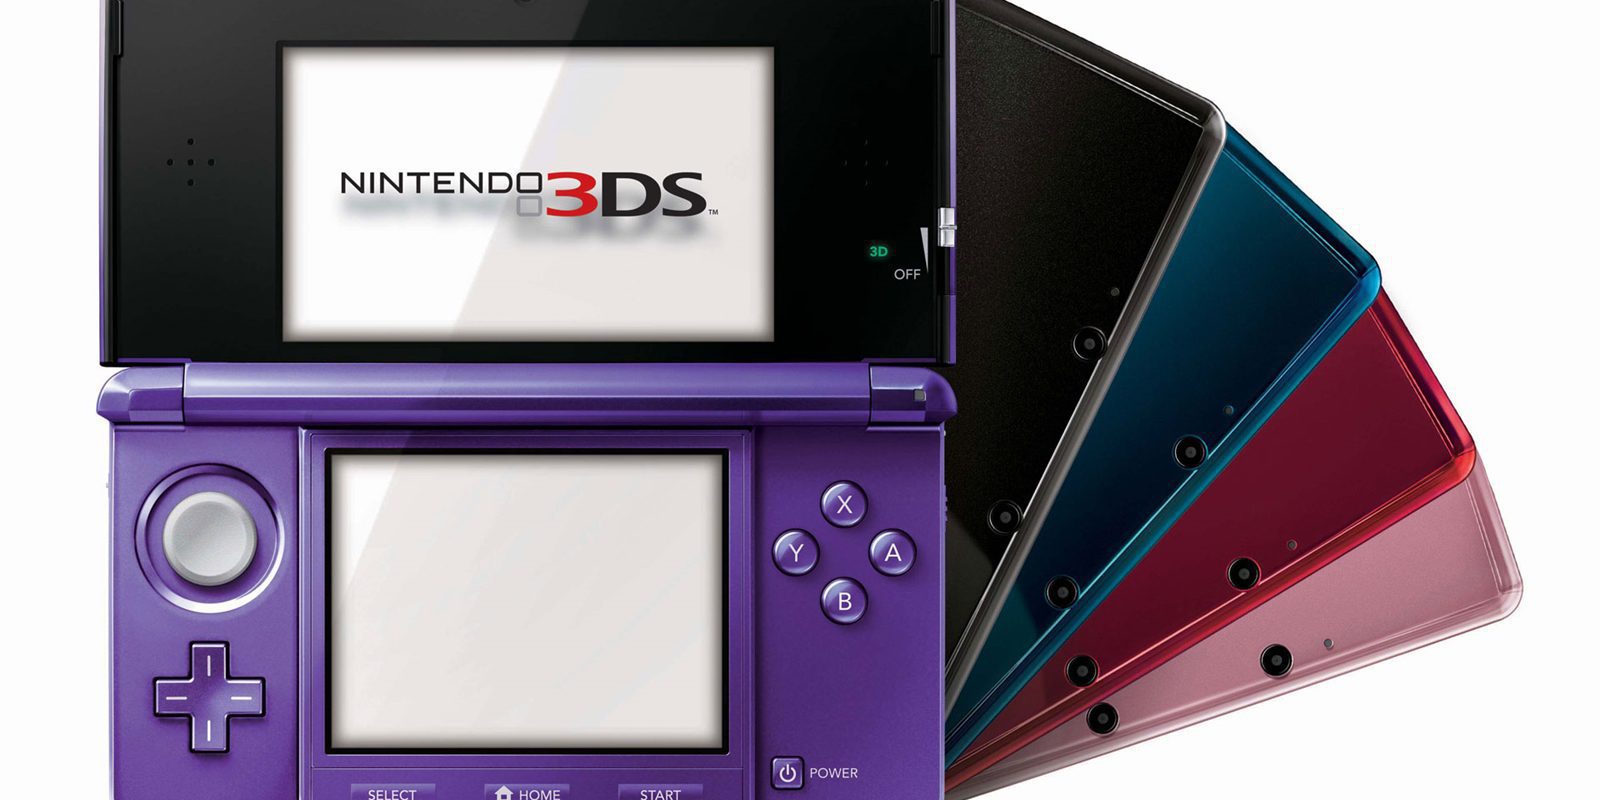 Ni PS4 ni Xbox One, Nintendo 3DS fue la consola más vendida en USA durante julio